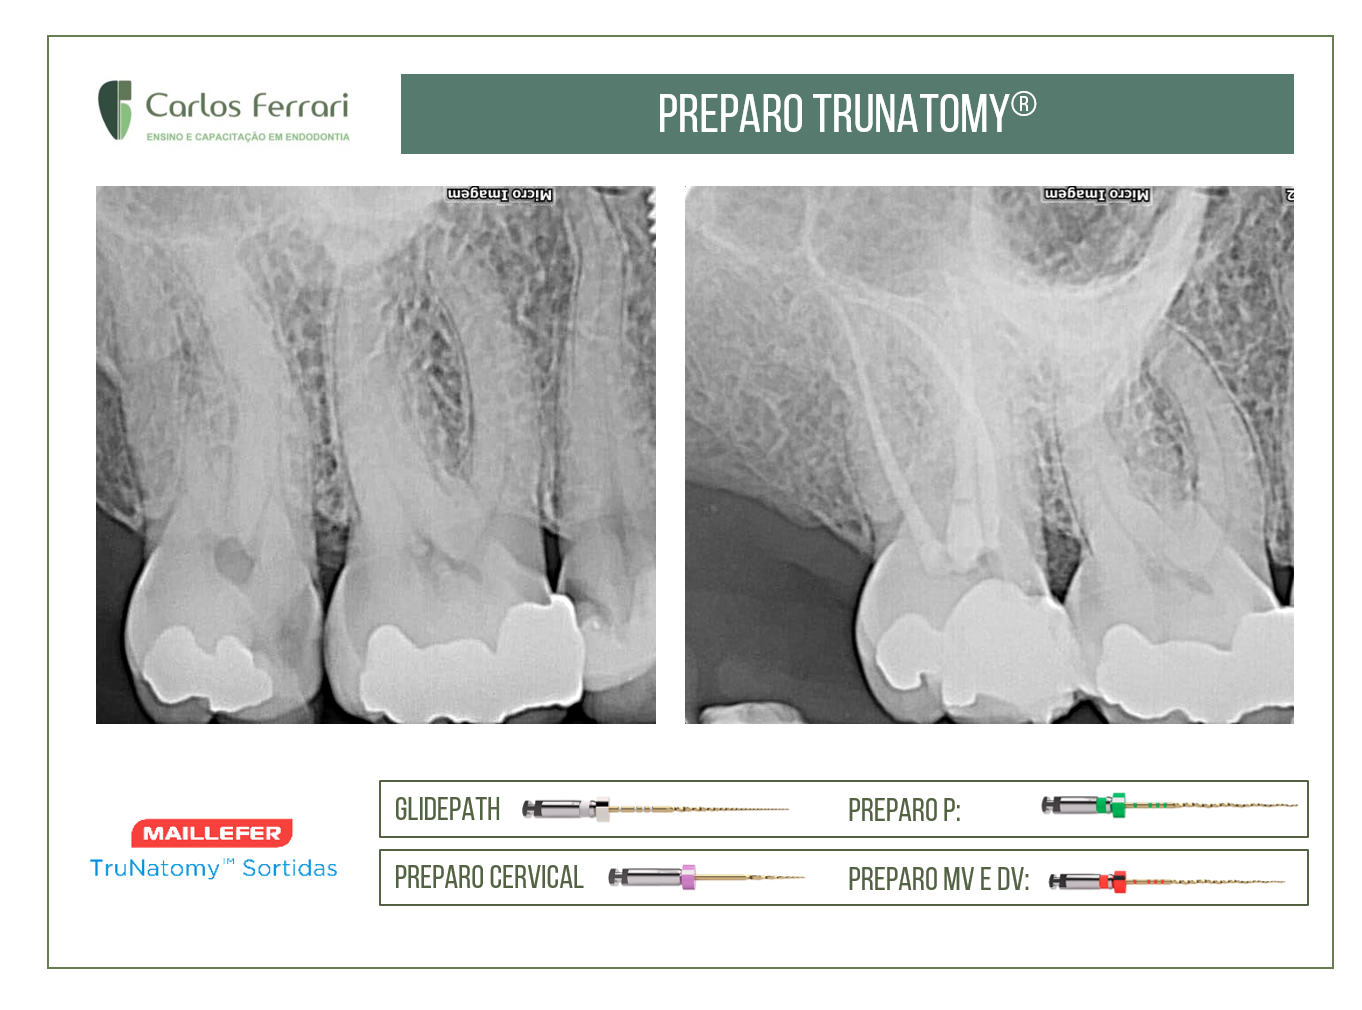 您目前正在查看使用Trunatomy系统的牙髓准备工作